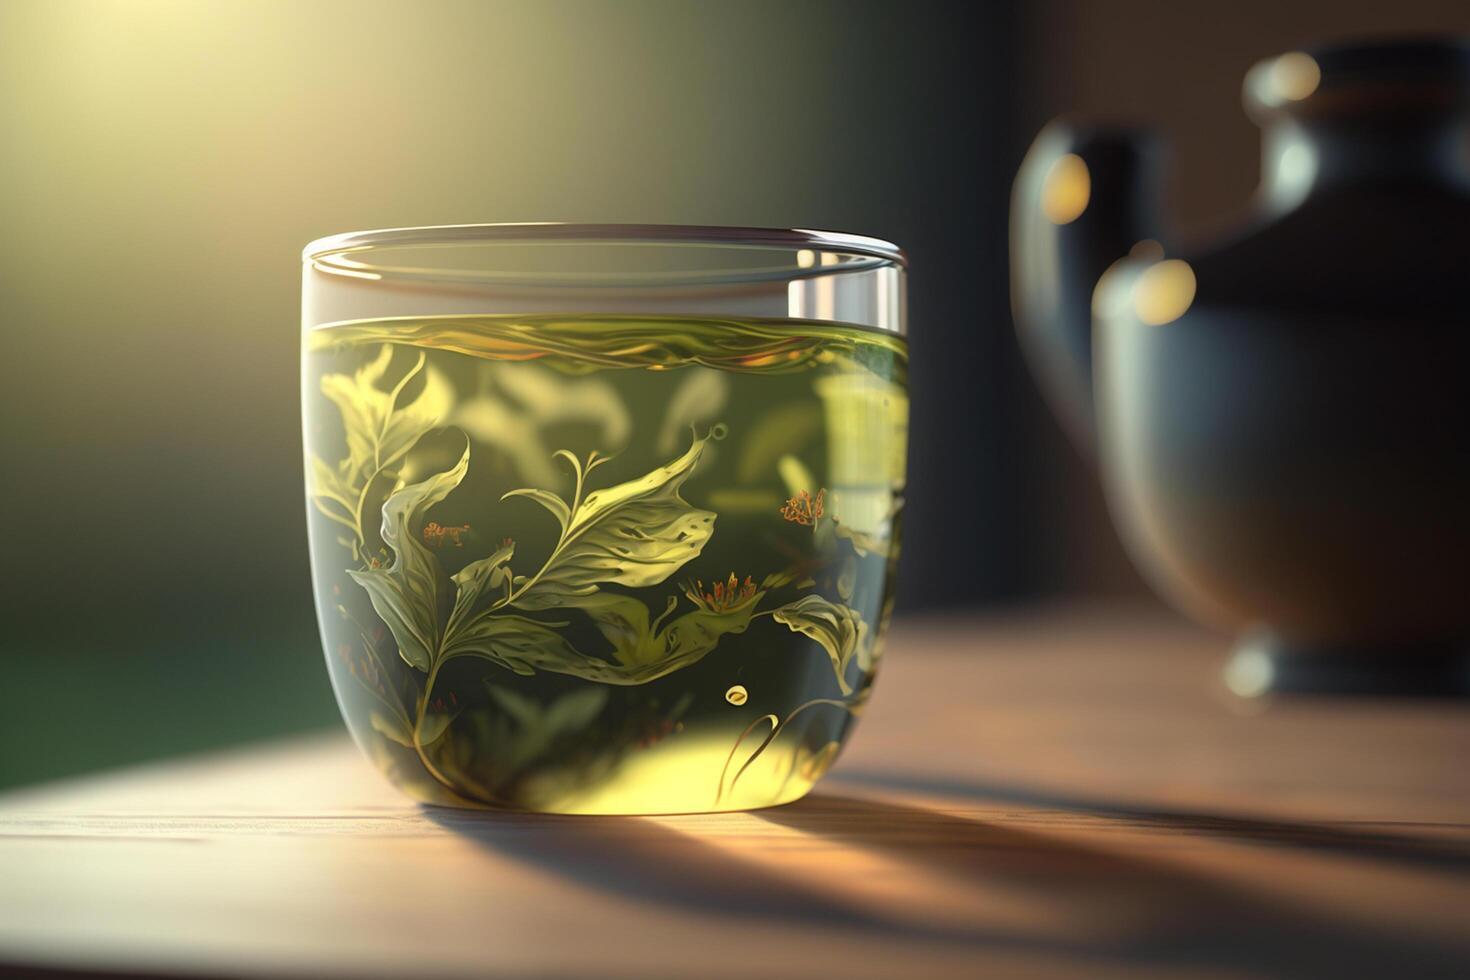 sereno ambiente com uma vidro do verde chá ai gerado foto